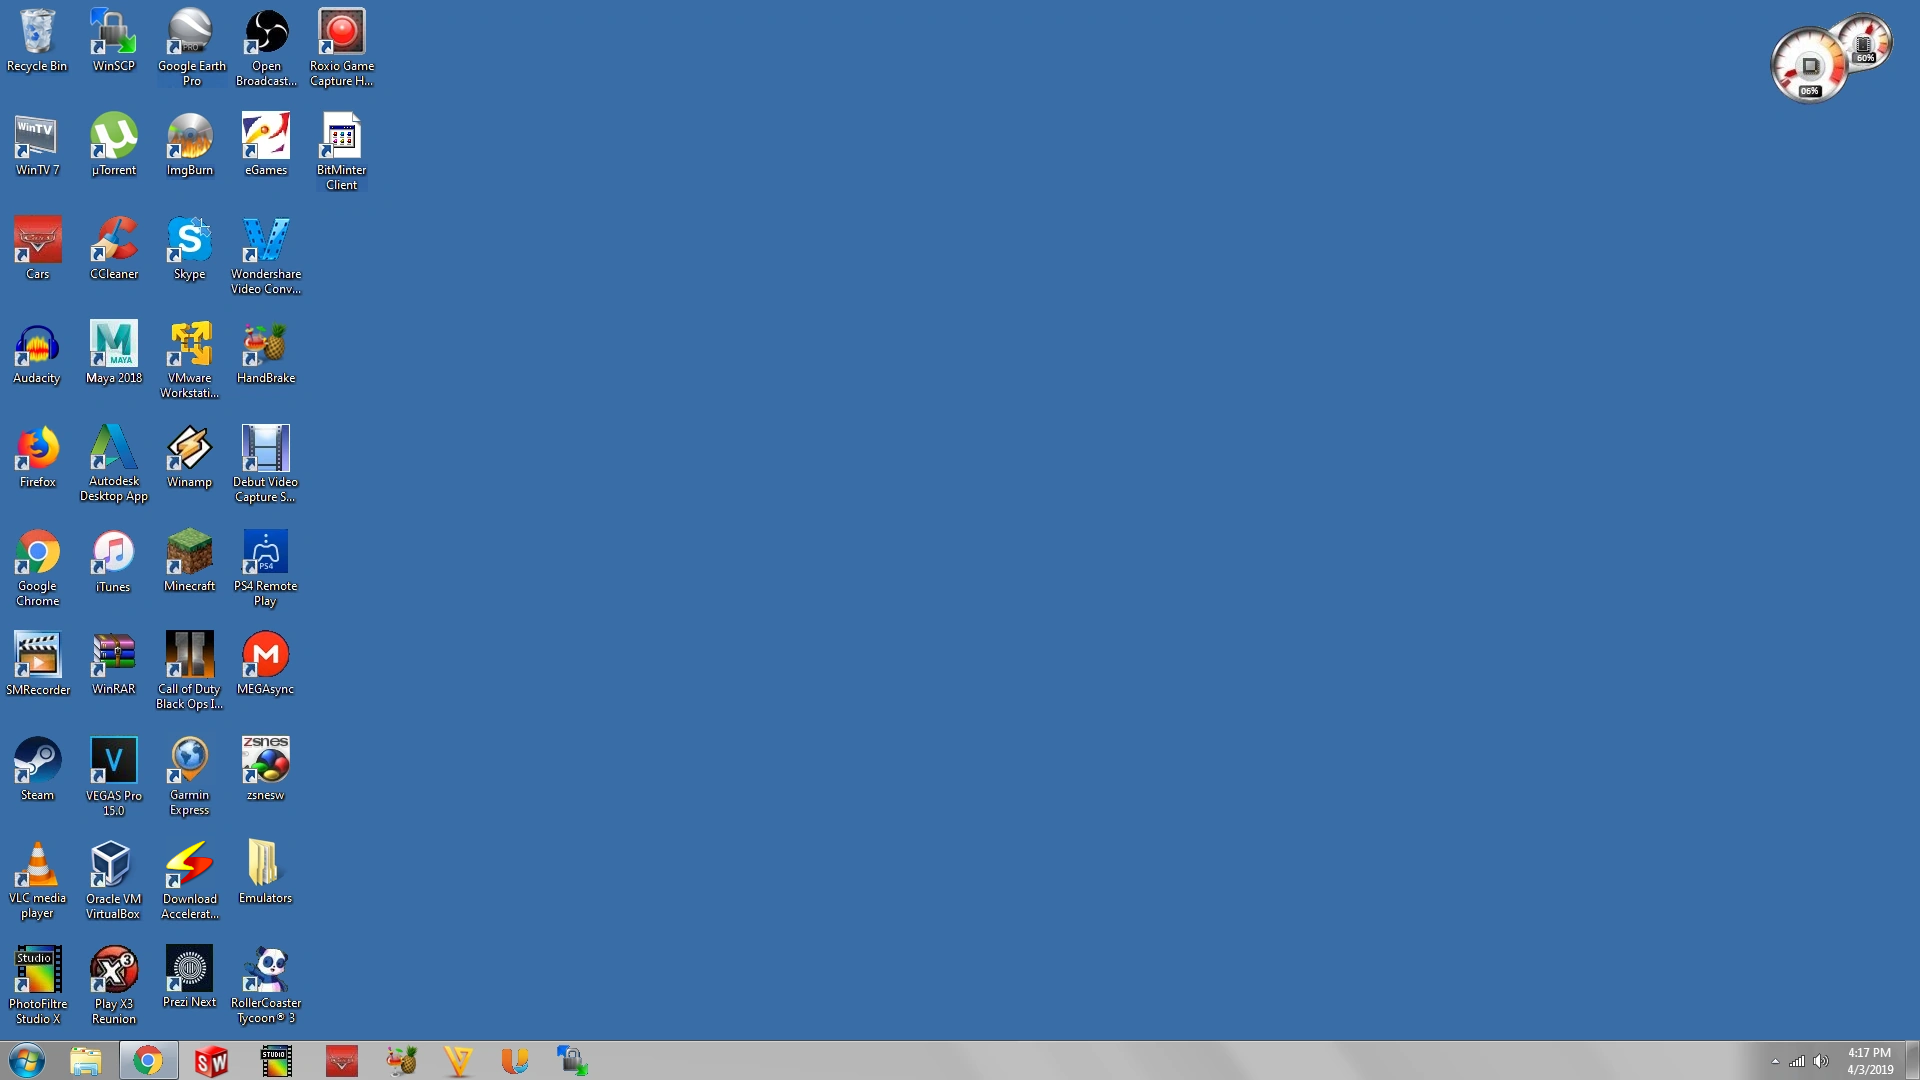 Windows 2000 (Blank Blue) Windows 7 Theme - Nintendofan12 Extra fotografia  (43240230) - fanpop